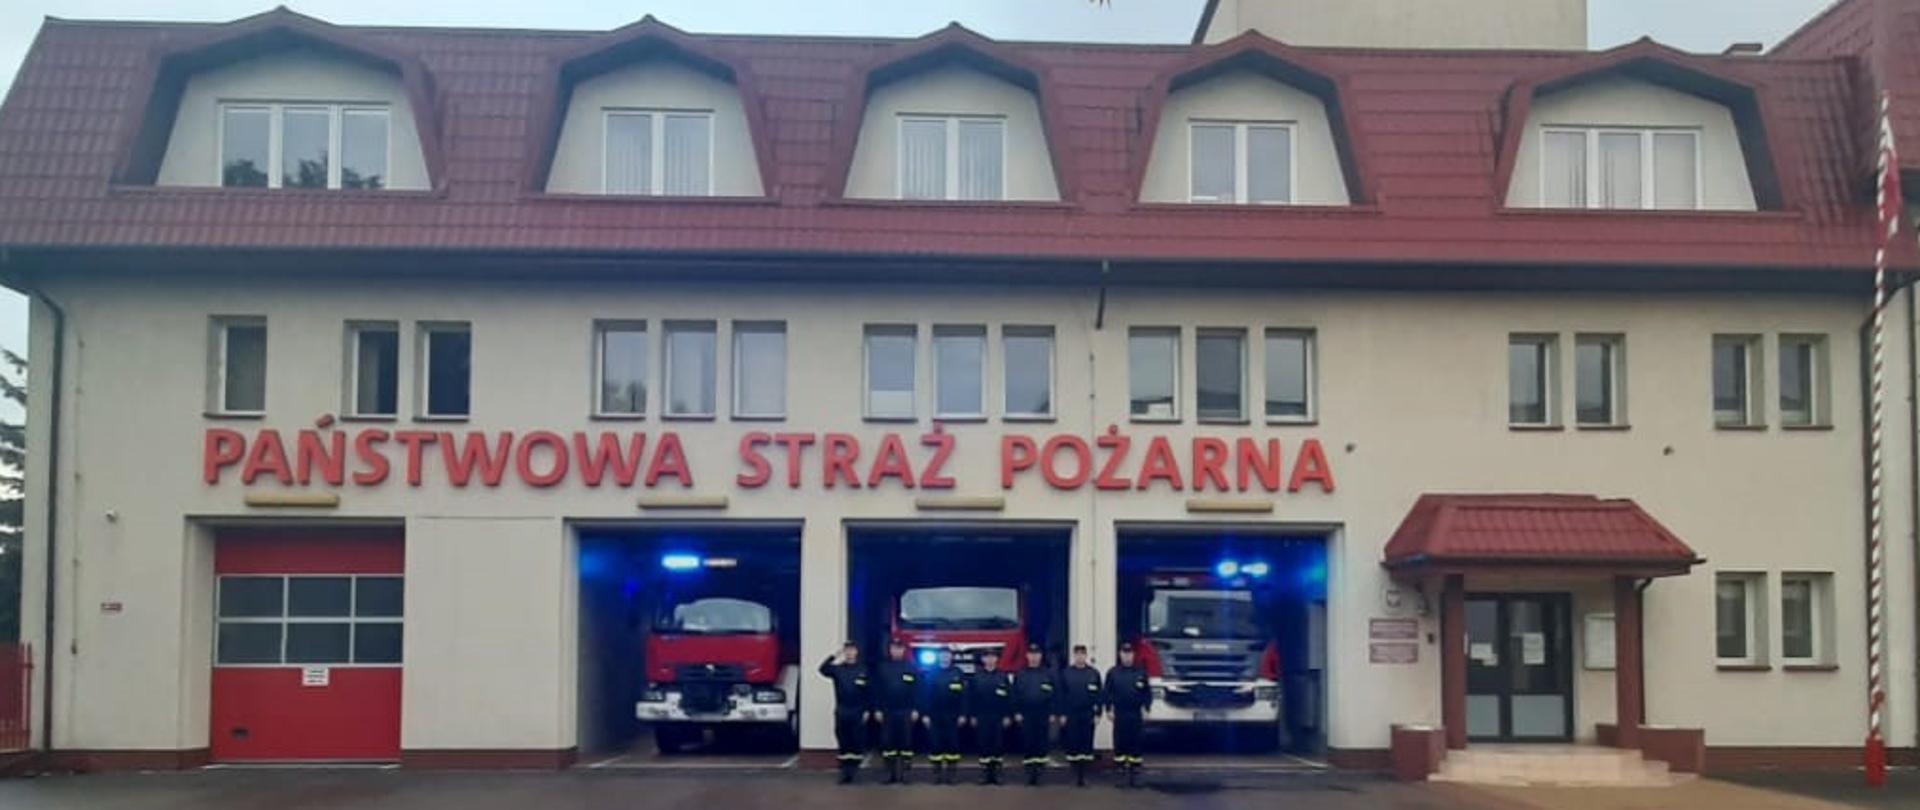 Strażacy z KP PSP w Bielsku Podlaskim ustawieni w szeregu przed budynkiem Komendy oddają hołd zmarłemu strażakowi z KM PSP w Grudziądzu. W samochodach ratowniczo-gaśniczych stojących za strażakami włączone są sygnały świetlne.